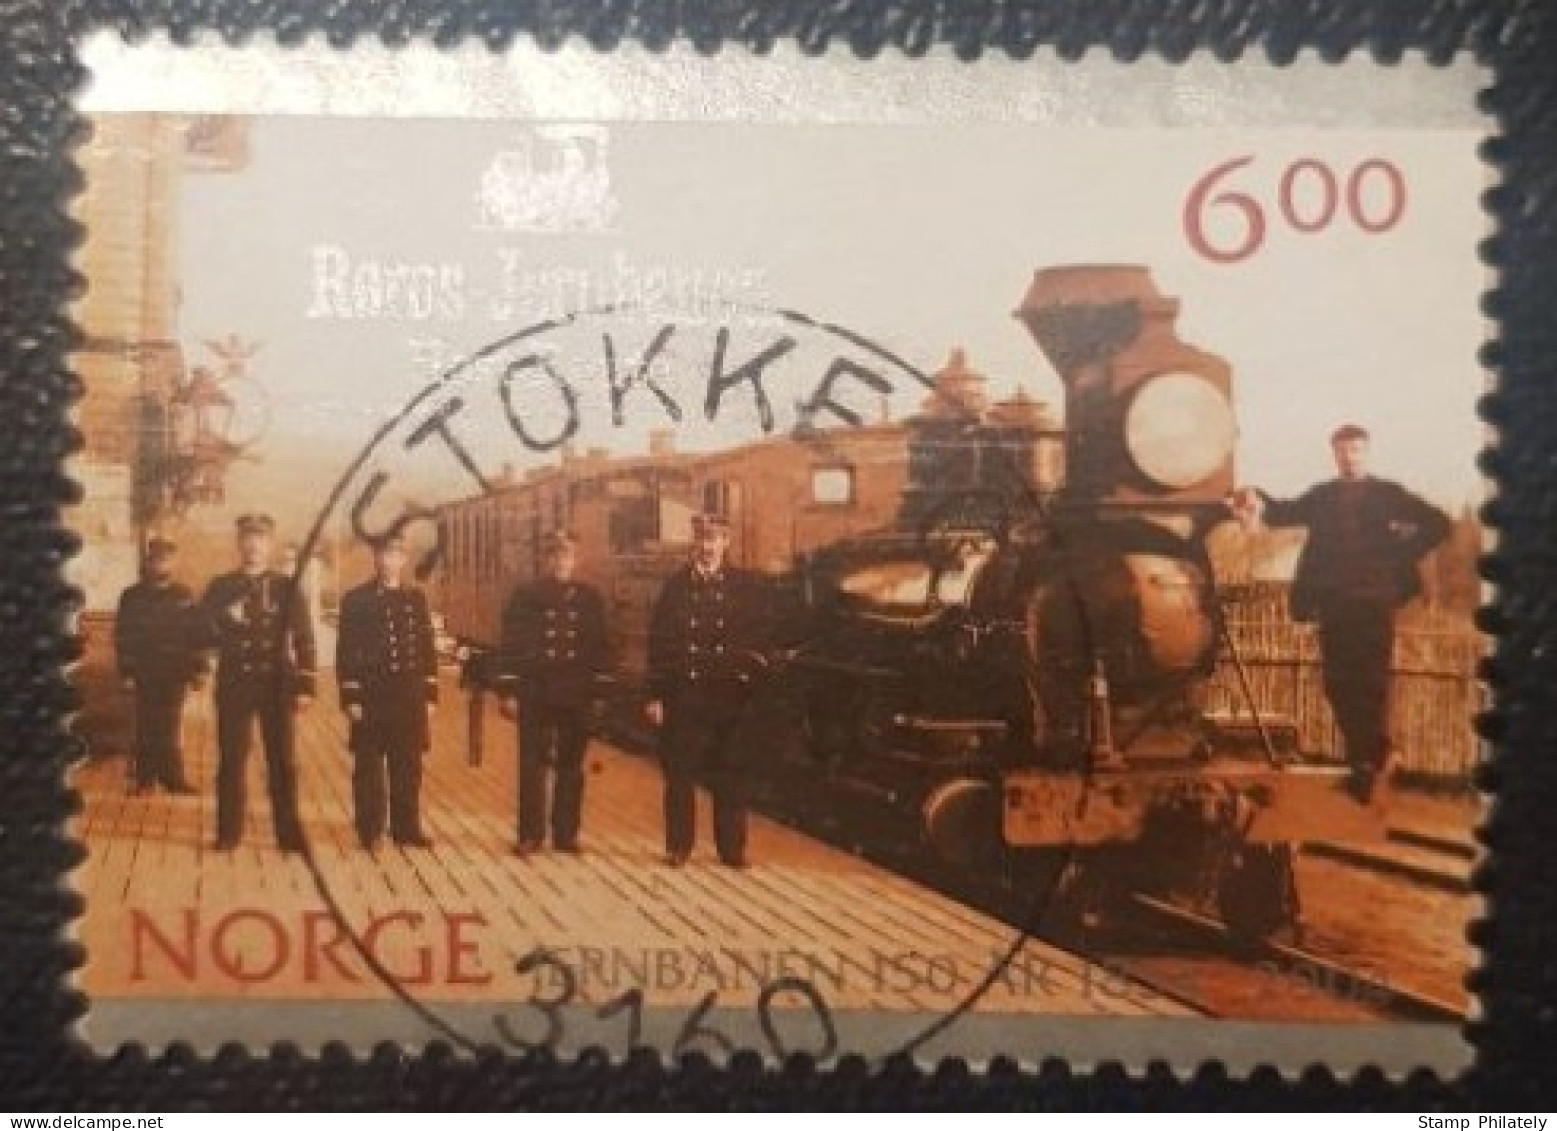 Norway 6Kr Used Postmark Stamp Railway Stokke Cancel - Usati